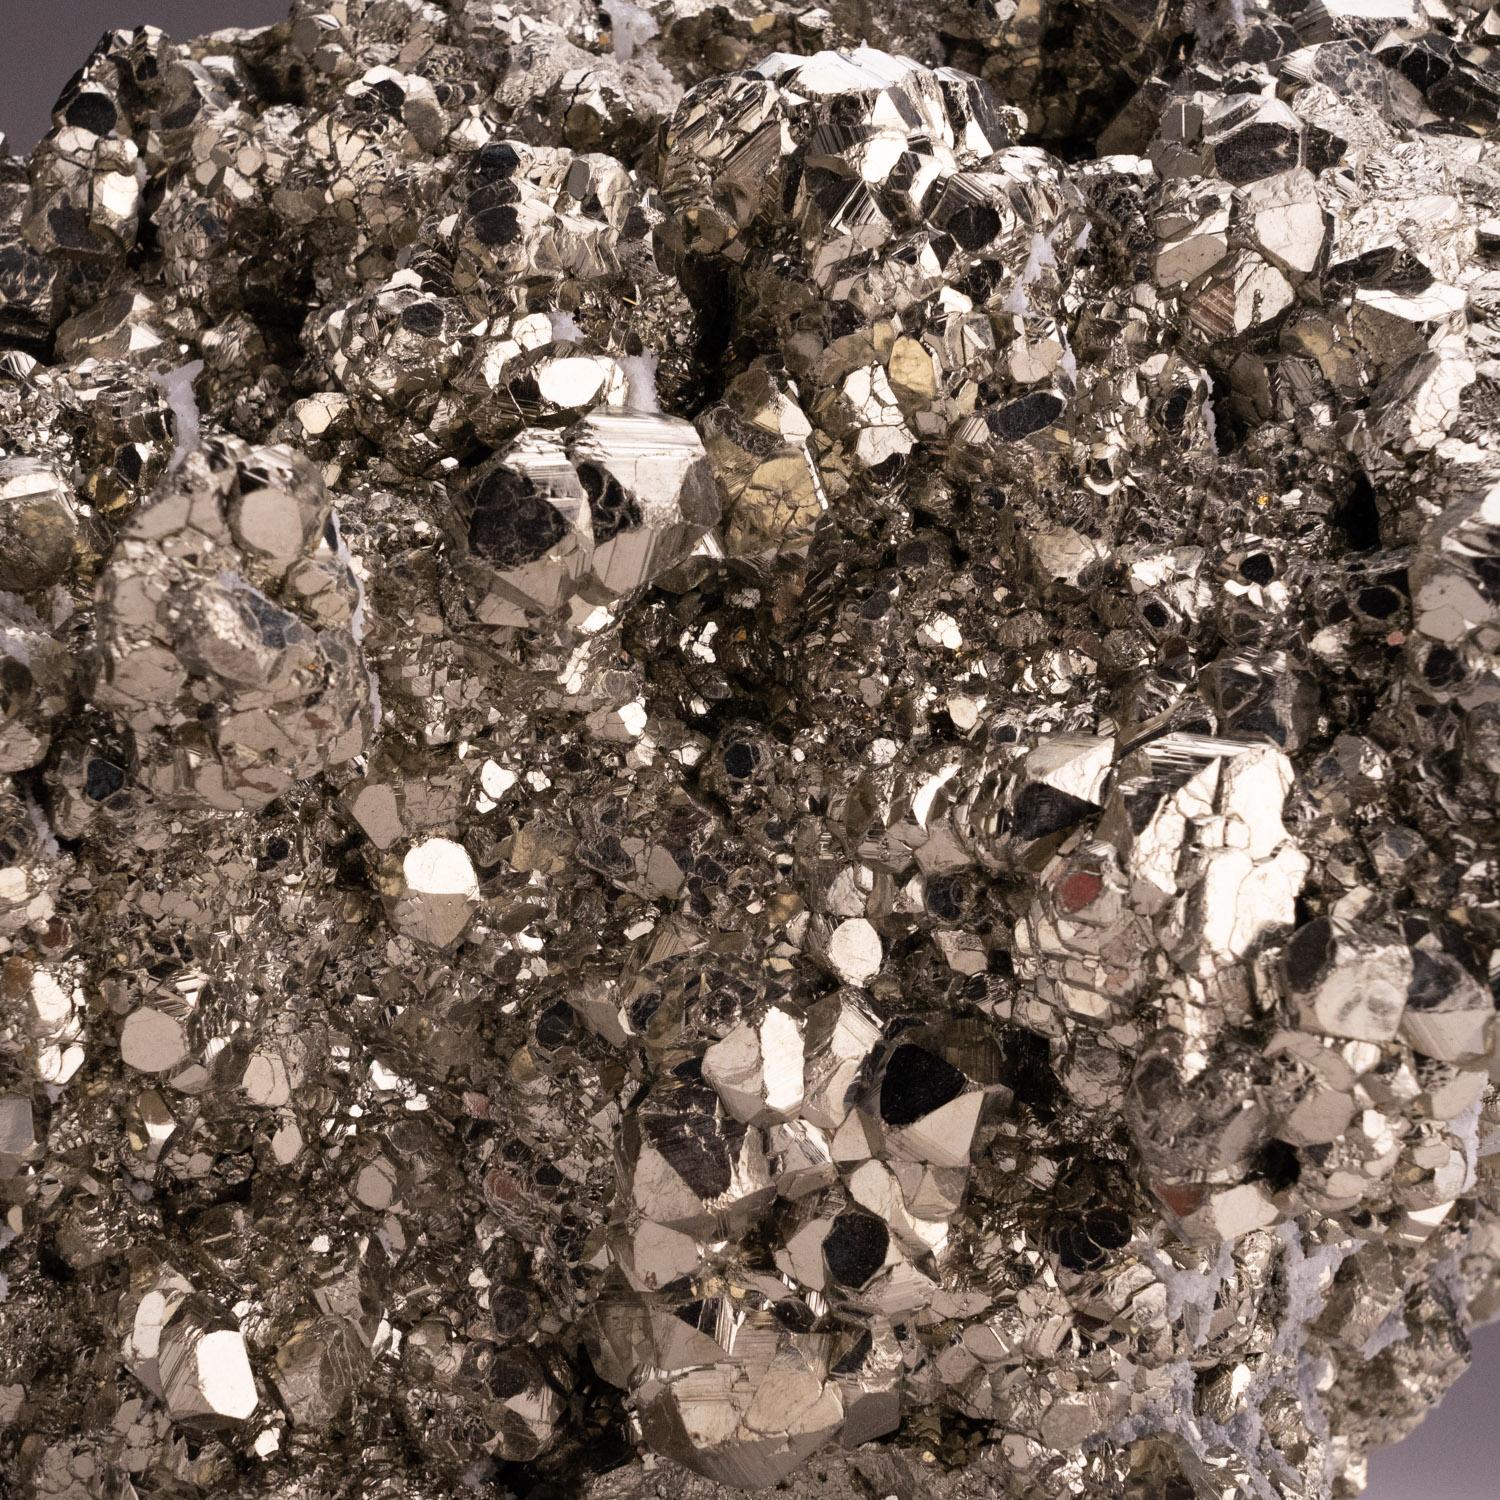 Un spécimen classique et très attrayant de Pyrite provenant de la mine de Huanzala, province de Huanuco, Pérou. Amas pyritoédrique complexe avec des faces cristallines striées et un éclat métallique miroir avec une couleur dorée brillante. Il y a